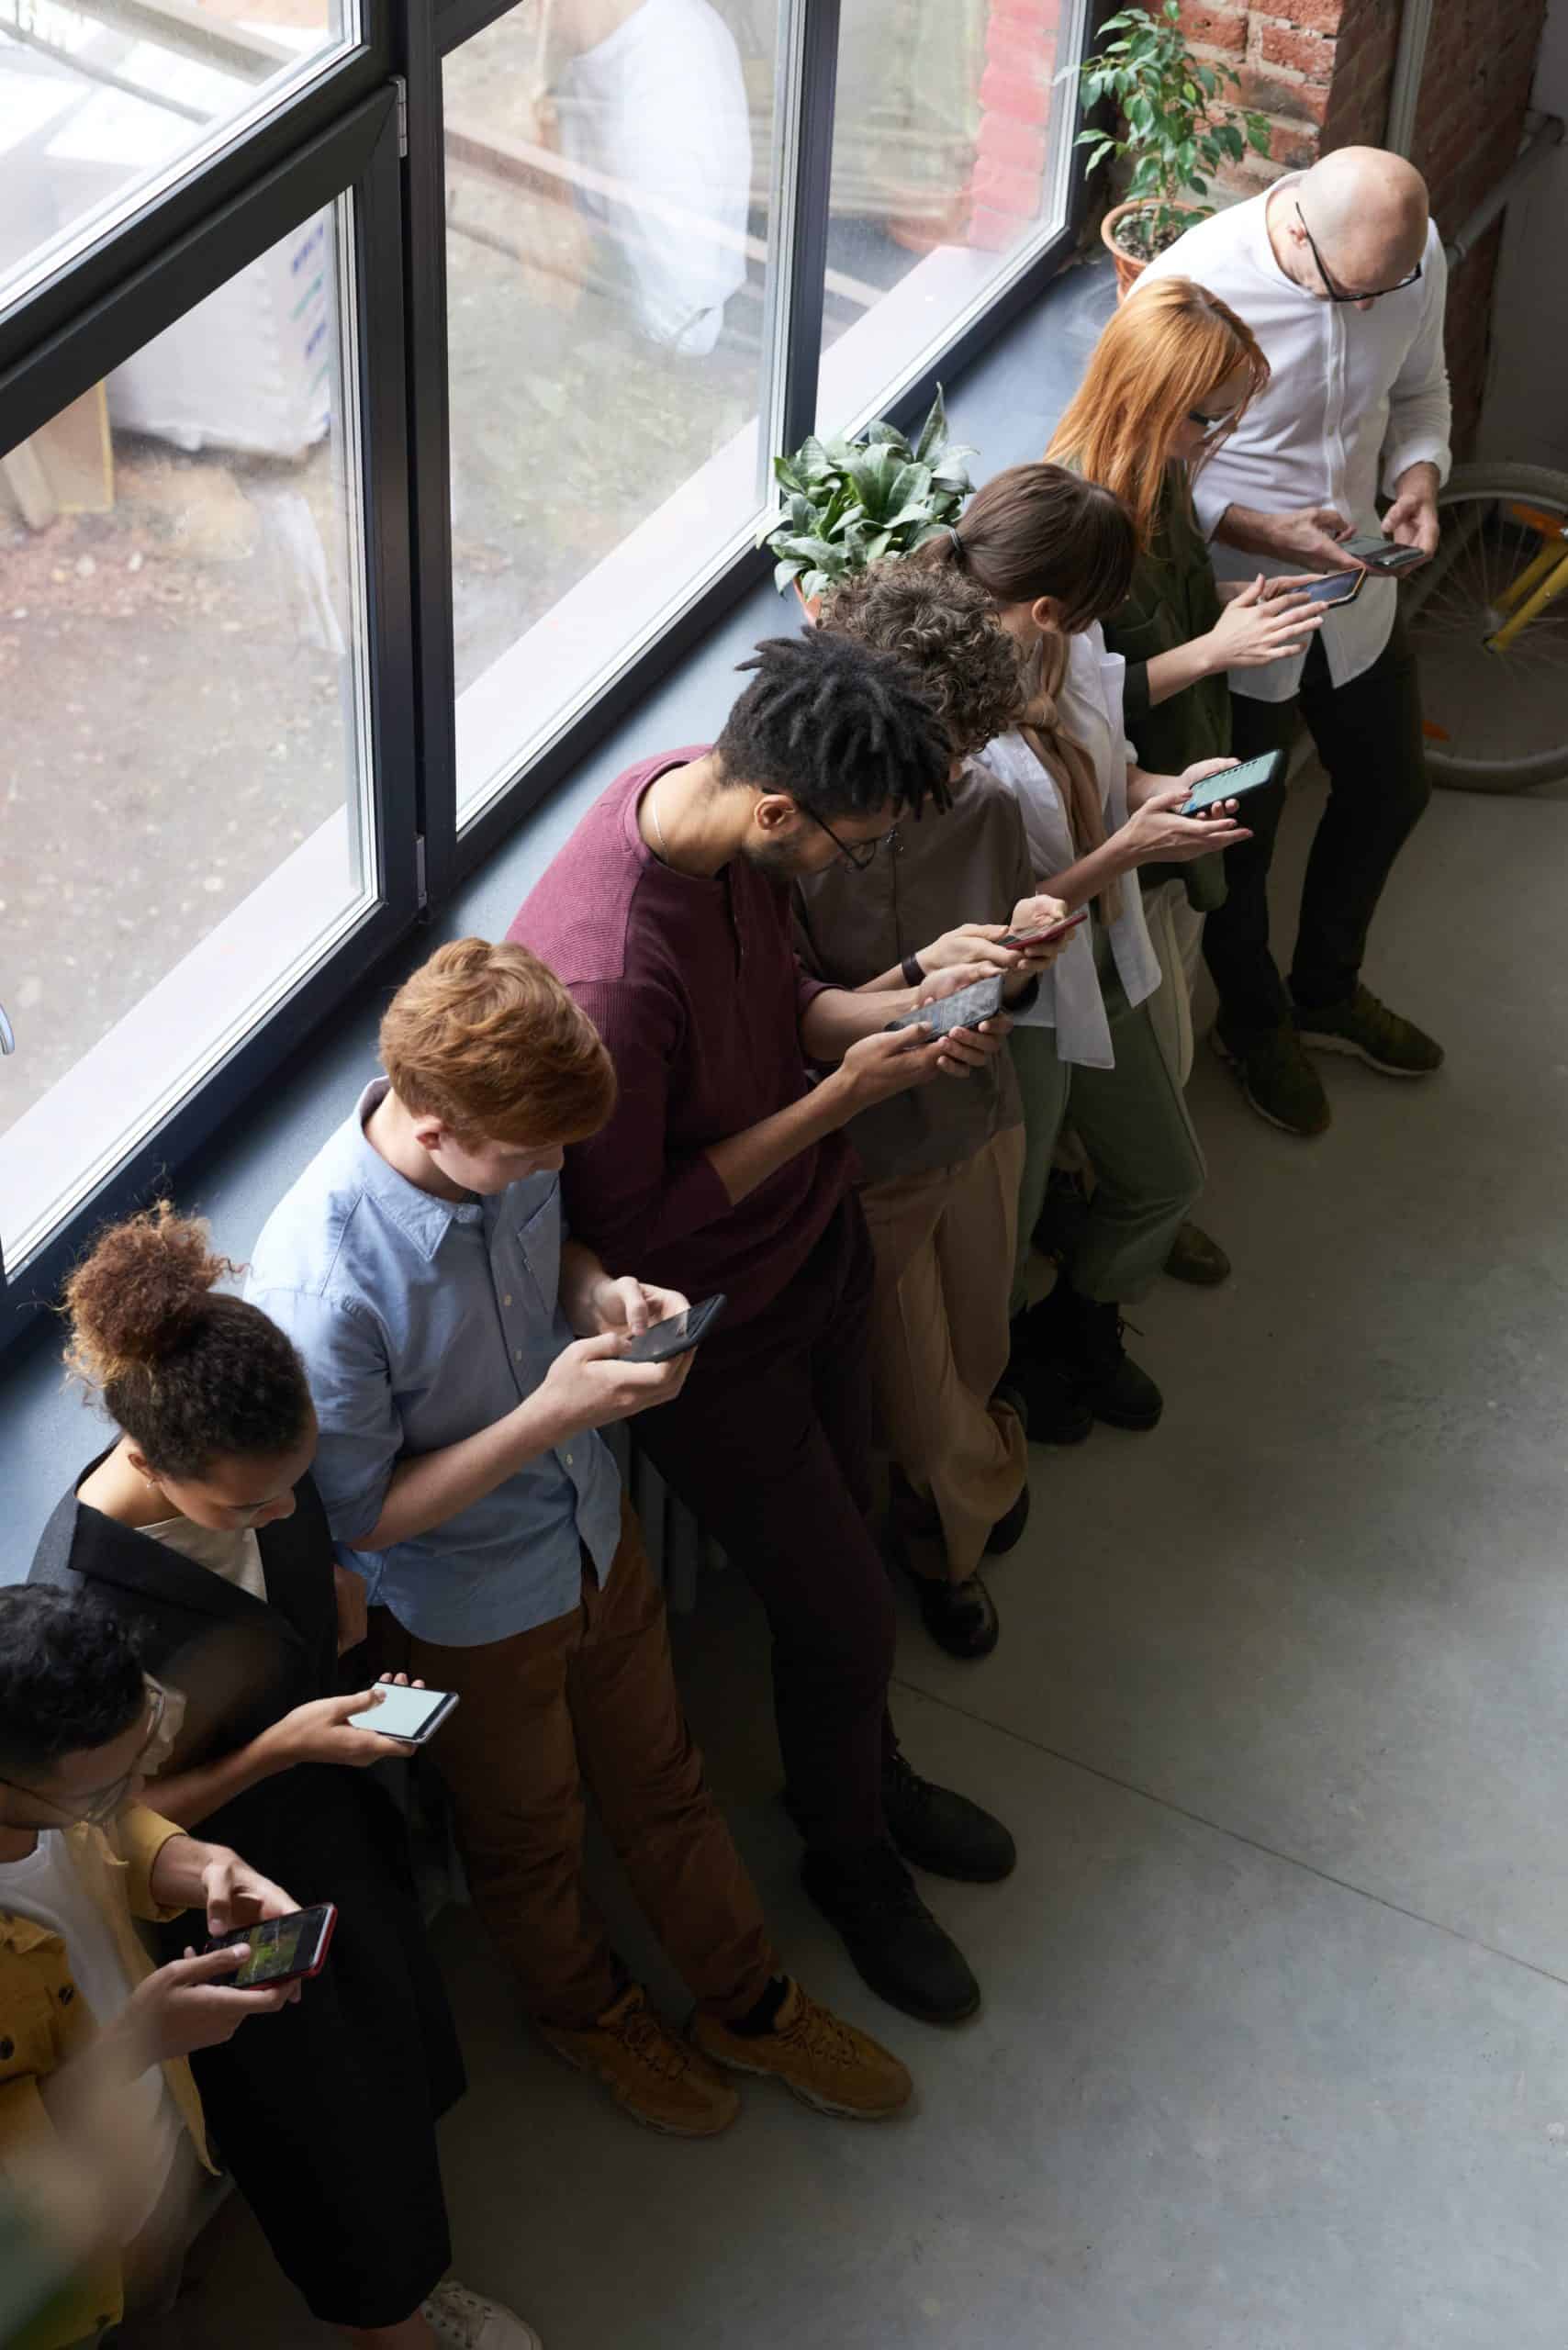 people looking down on their phones